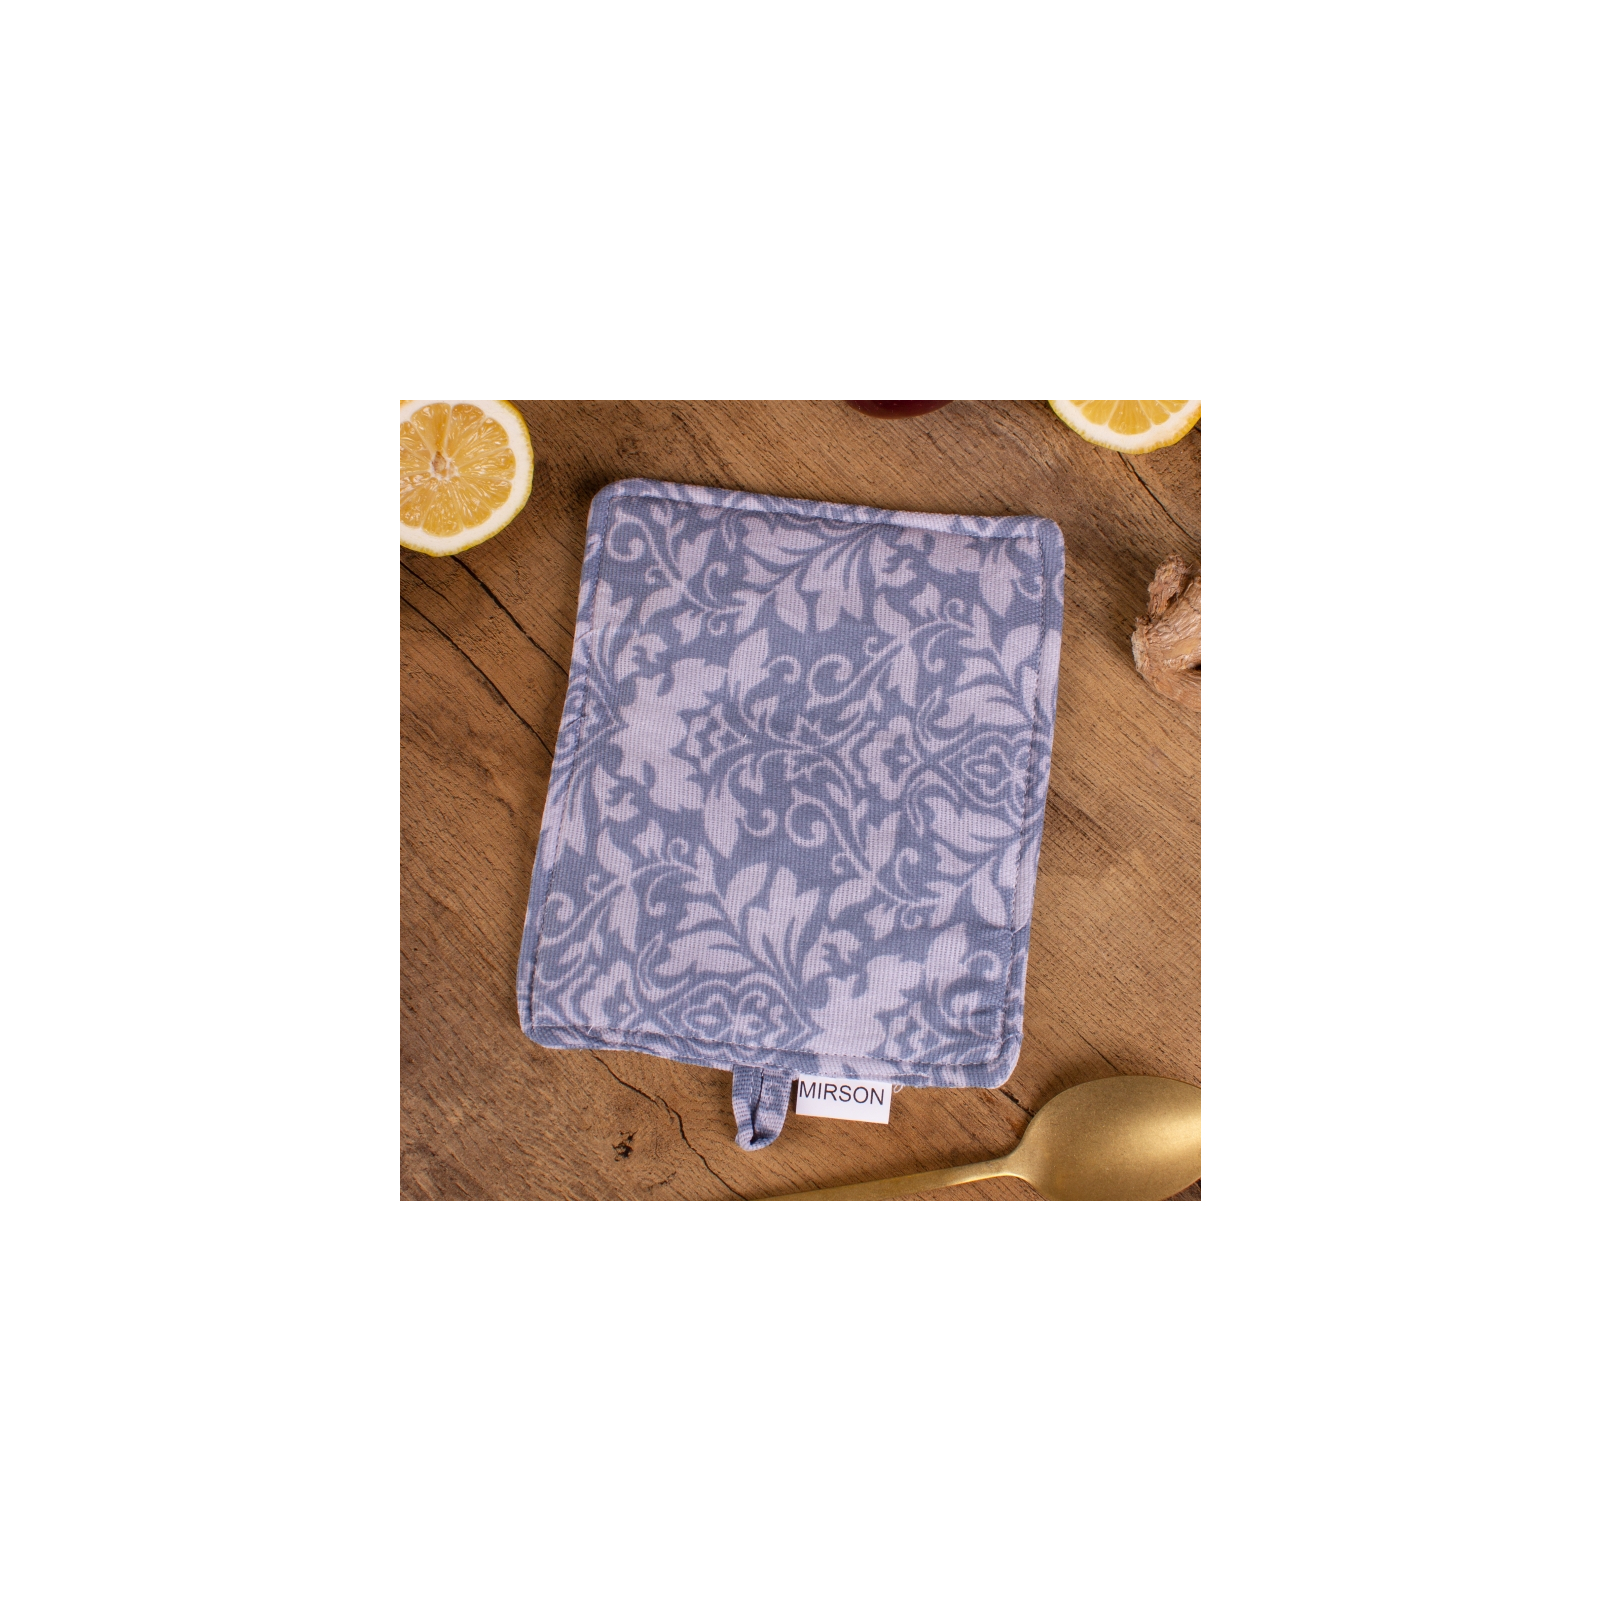 Кухонная прихватка MirSon рогожа/полупанама №217 - Blue patterns (2200006754459) изображение 2